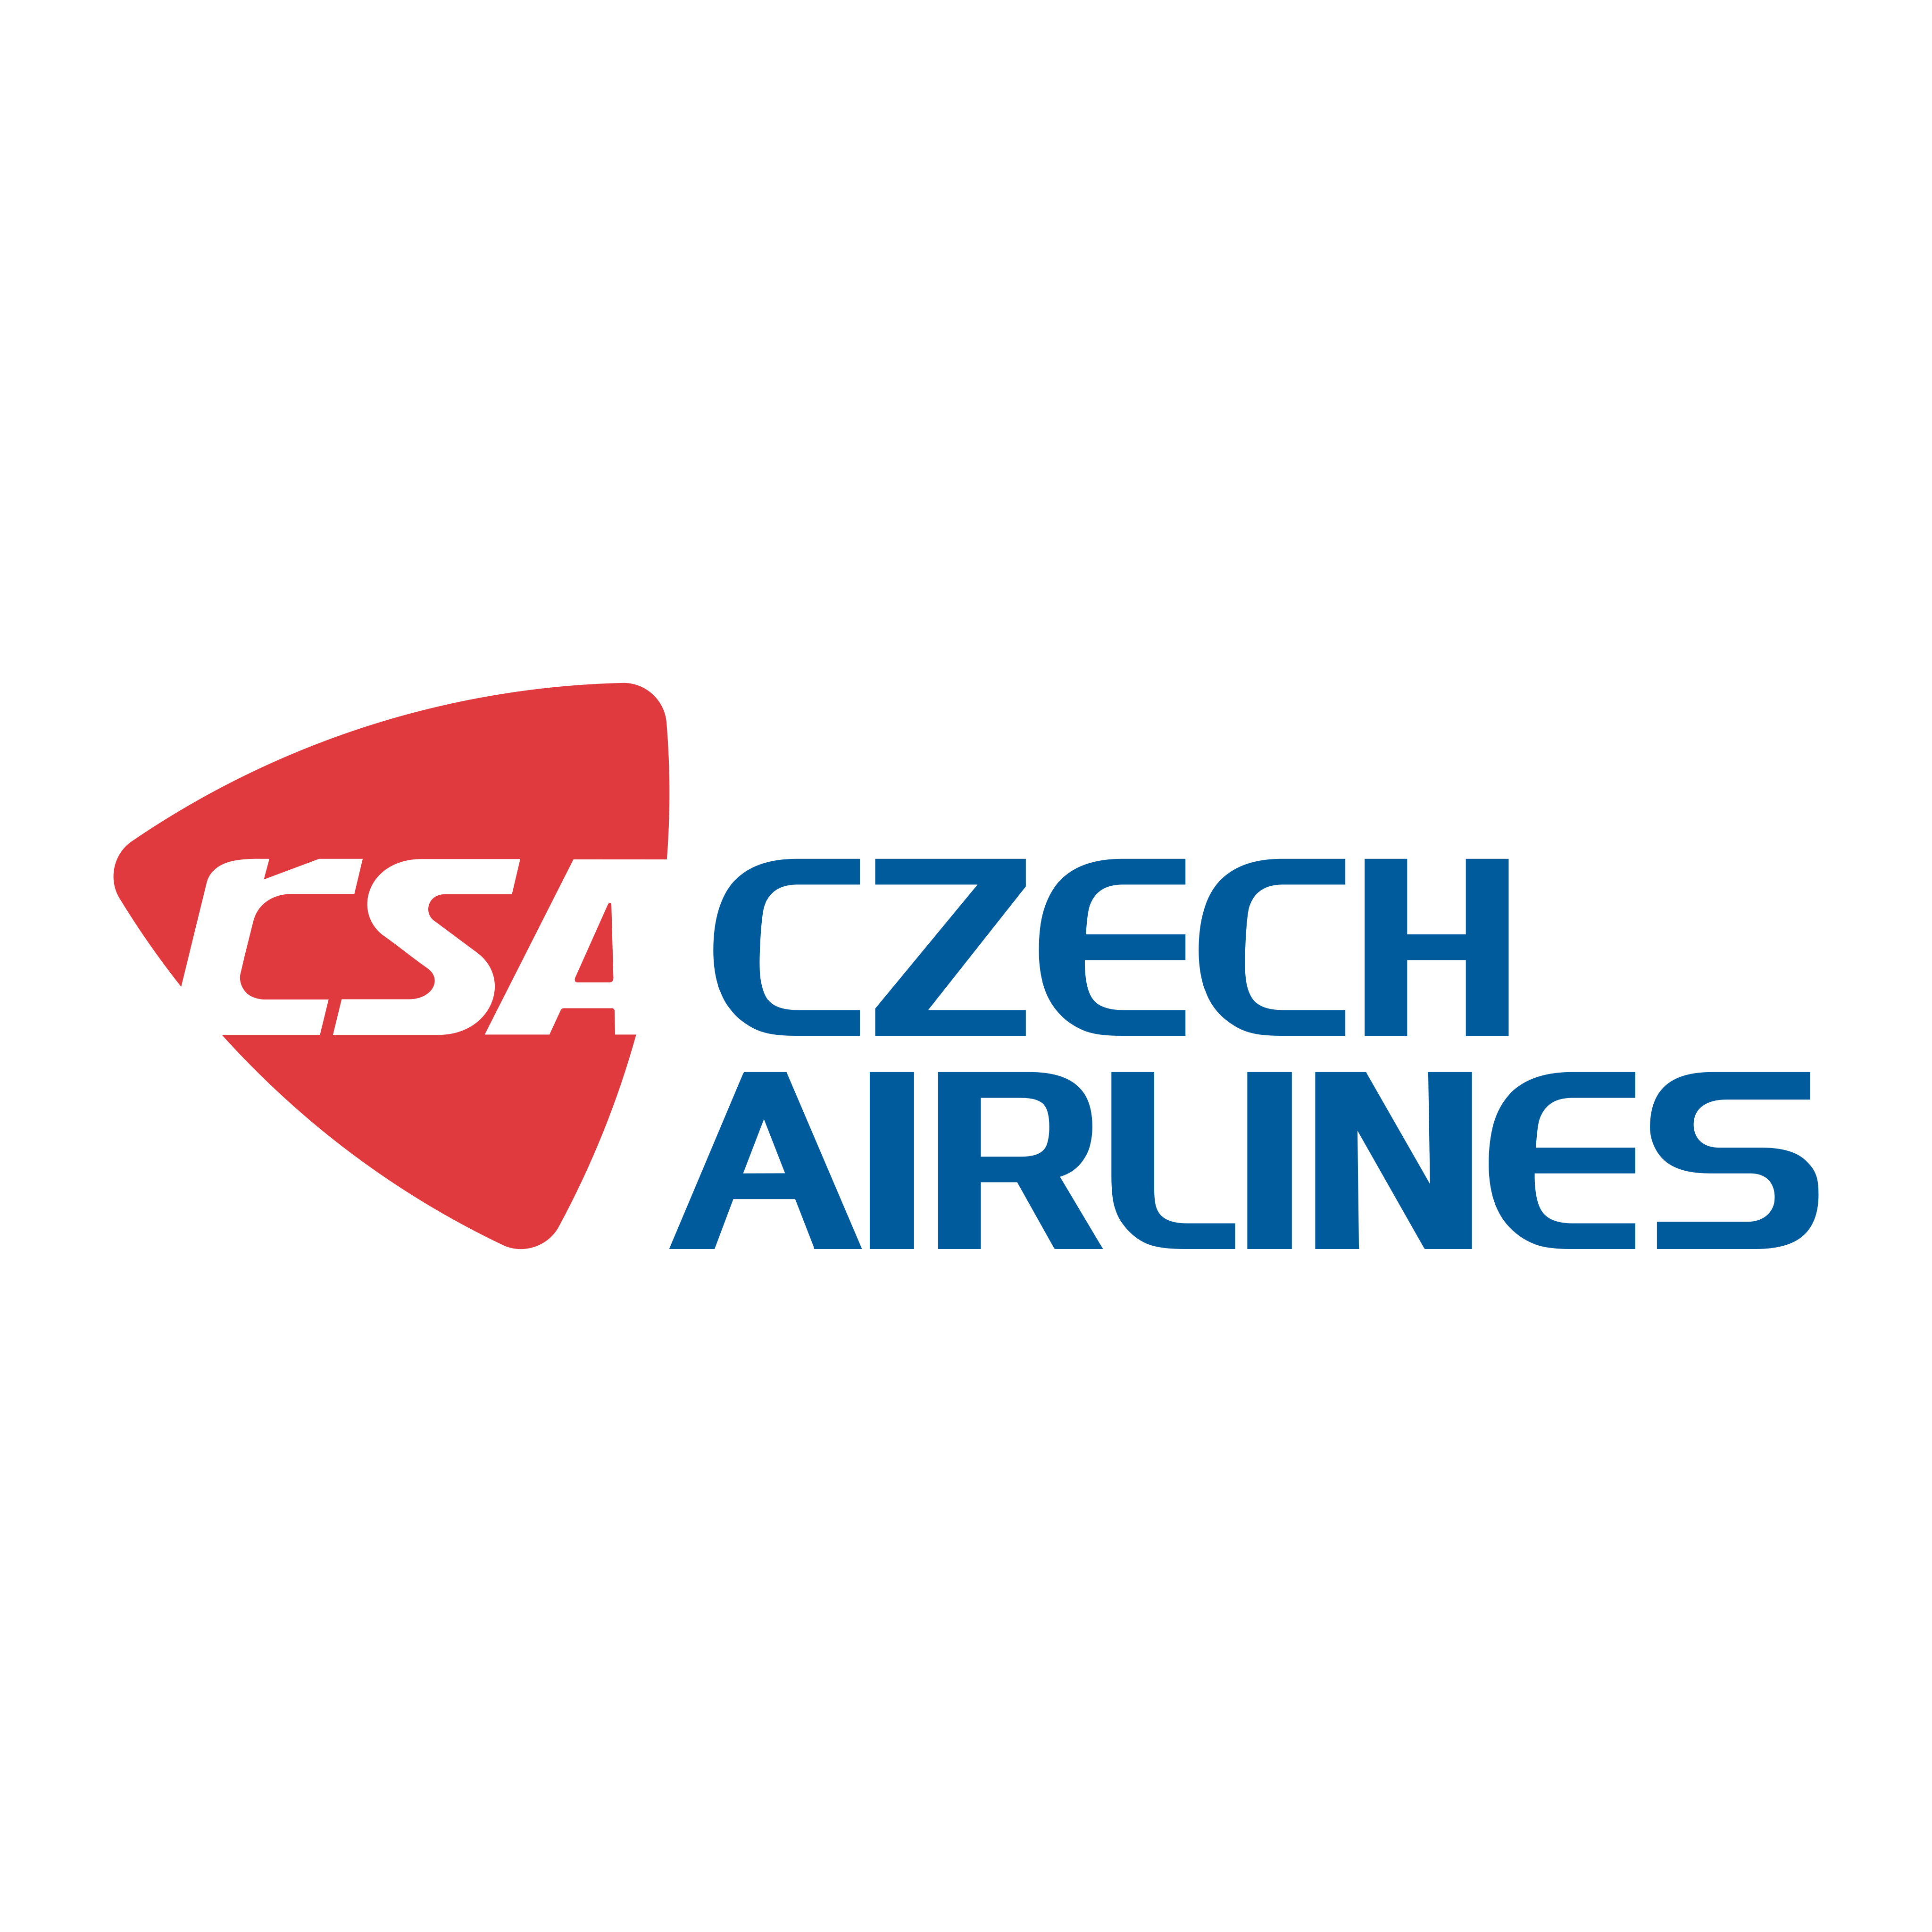 czech airlines logo 0 - Czech Airlines Logo